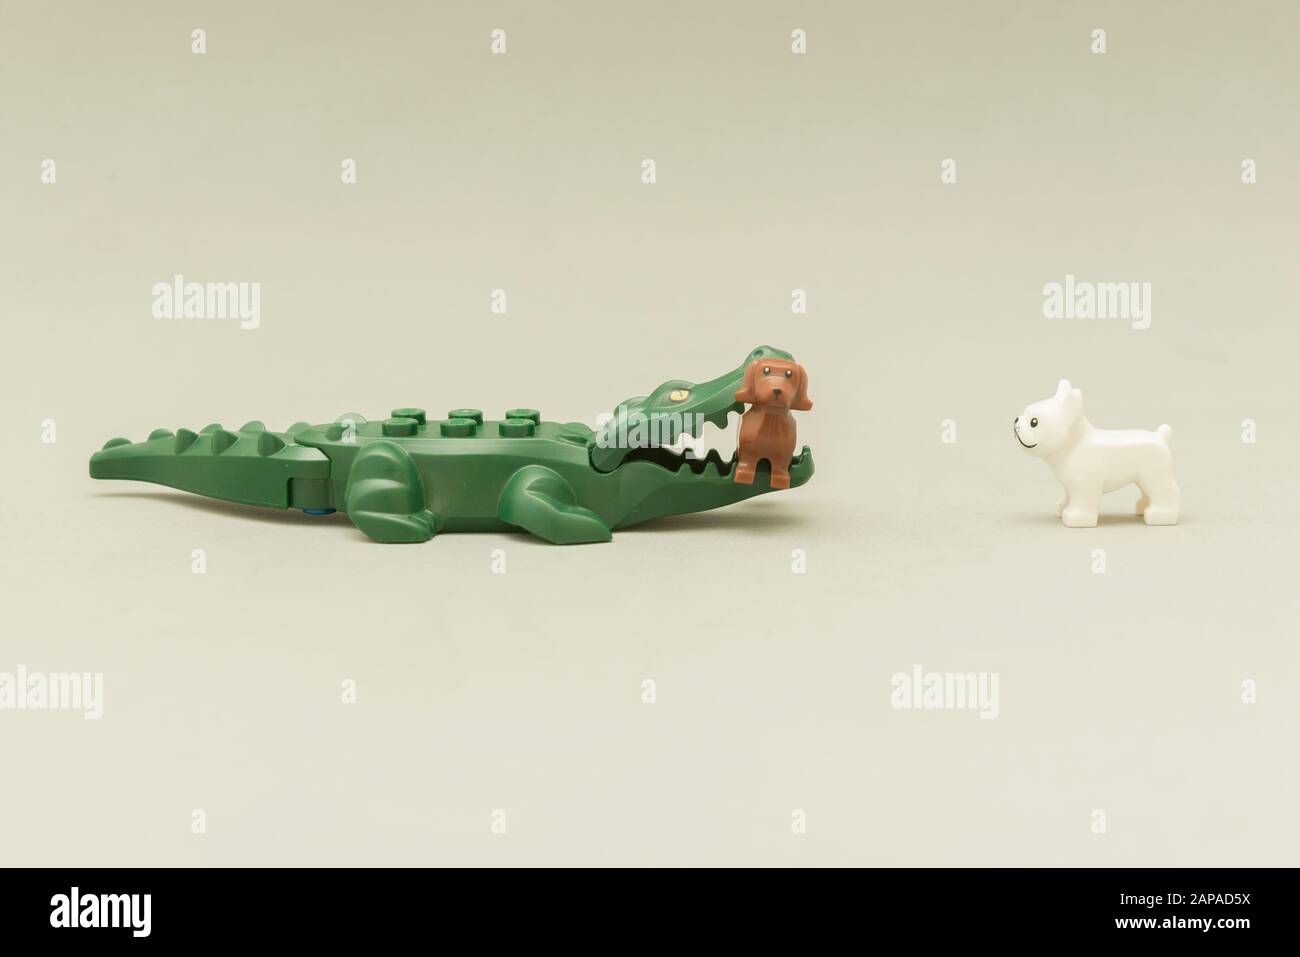 Florianopolis - Brasilien, 5. Mai 2019: LEGO Minifiguren - Alligator beißt  einen Hund mit seinem Mund voller Zähne. Wilde Tiere im Vergleich zu  Haustieren. Bein Stockfotografie - Alamy